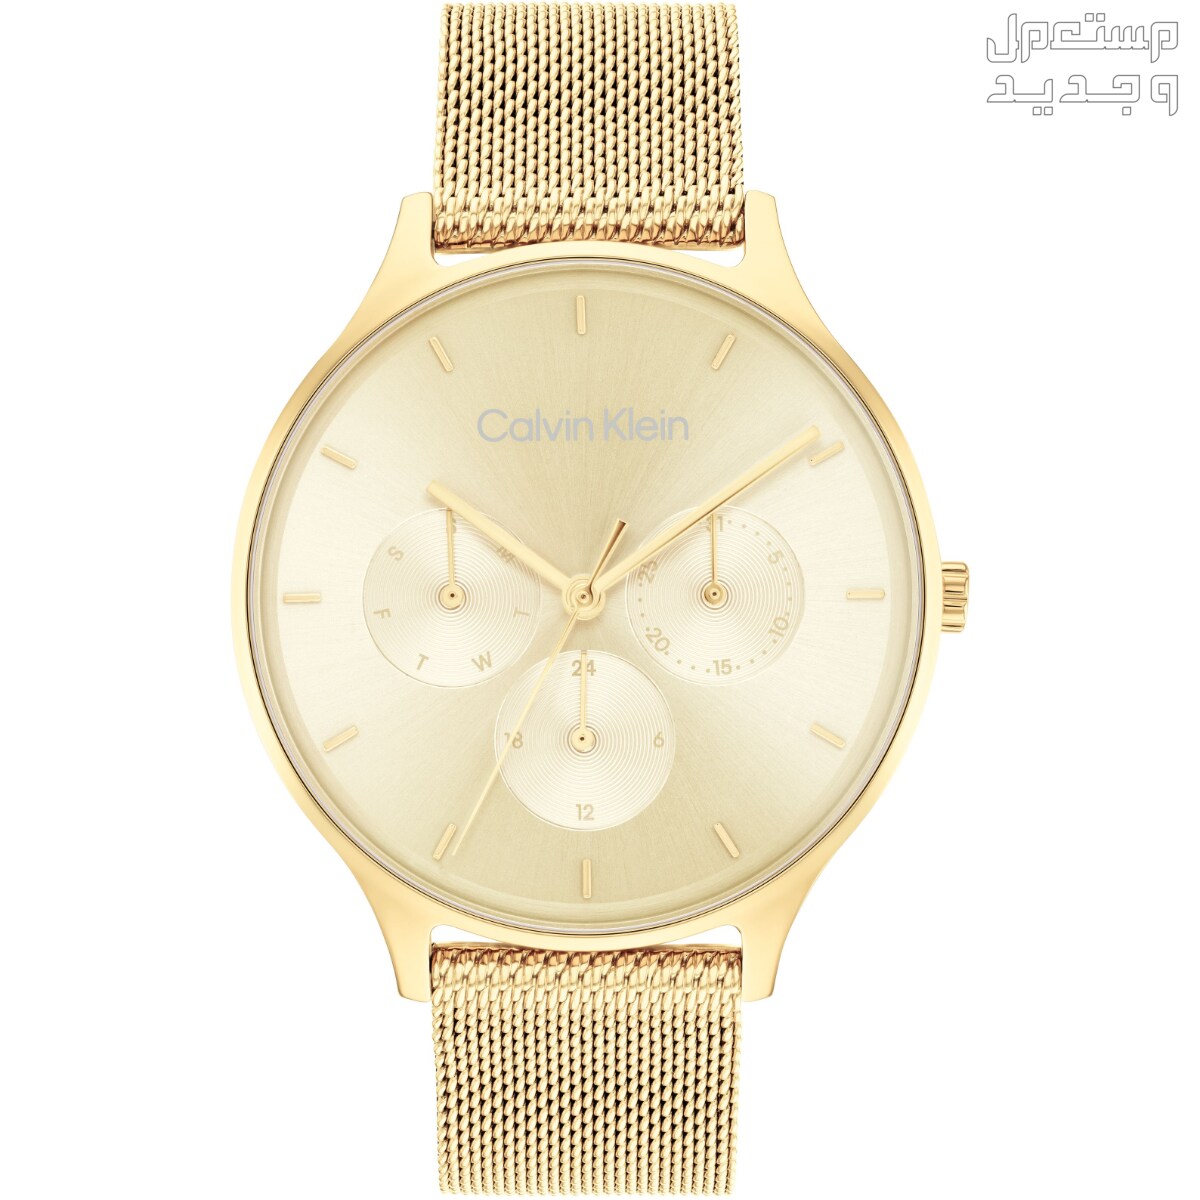 أنواع ساعات يد ذهب نسائية واسعارها في اليَمَن ساعة Calvin Klein Timeless Multifunction Day and Date Gold Steel Watch 25200103